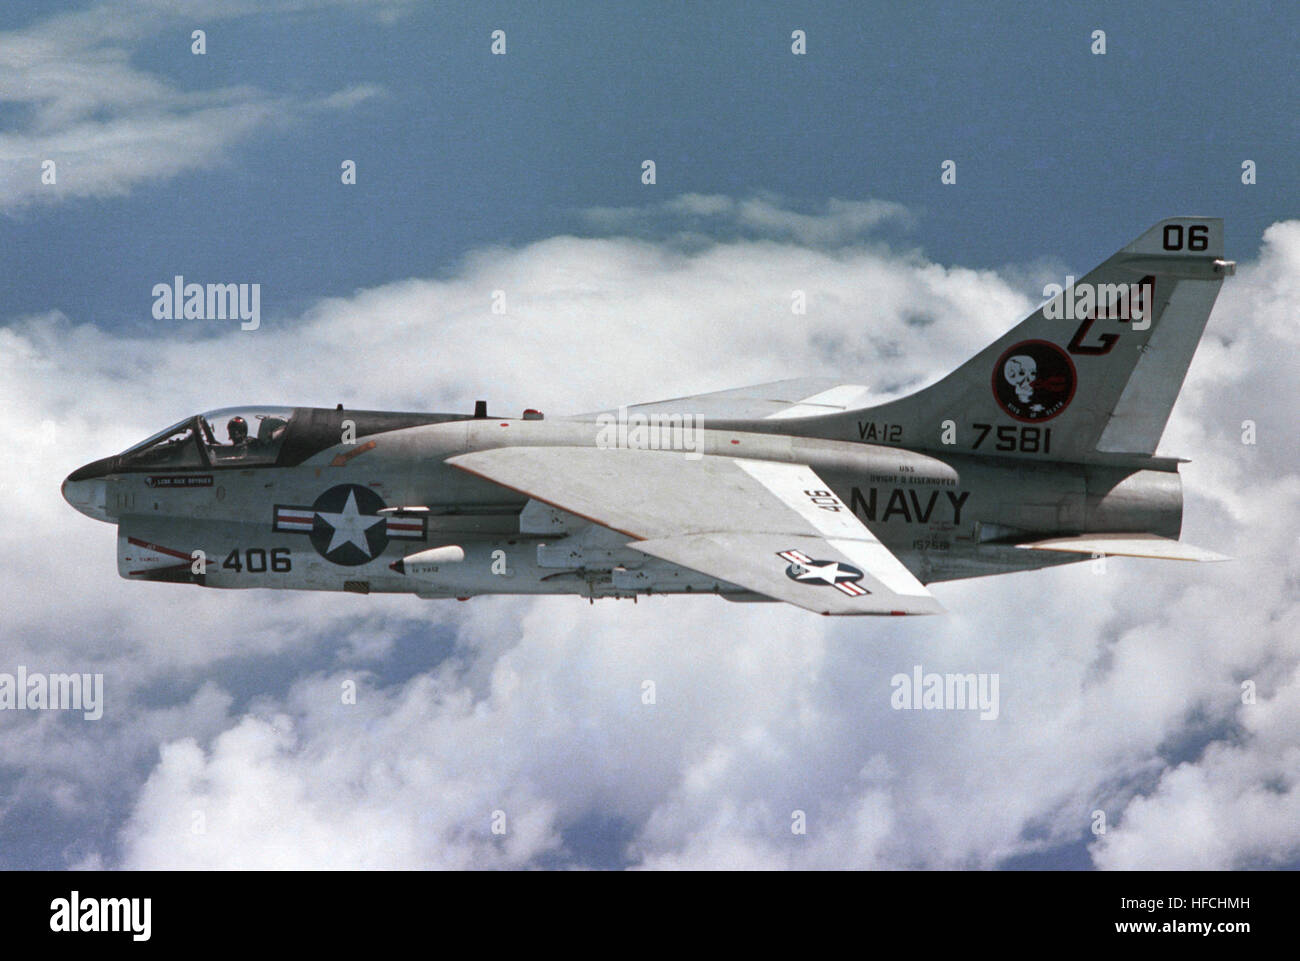 A-7E Corsair II VA-12 Stock Photo